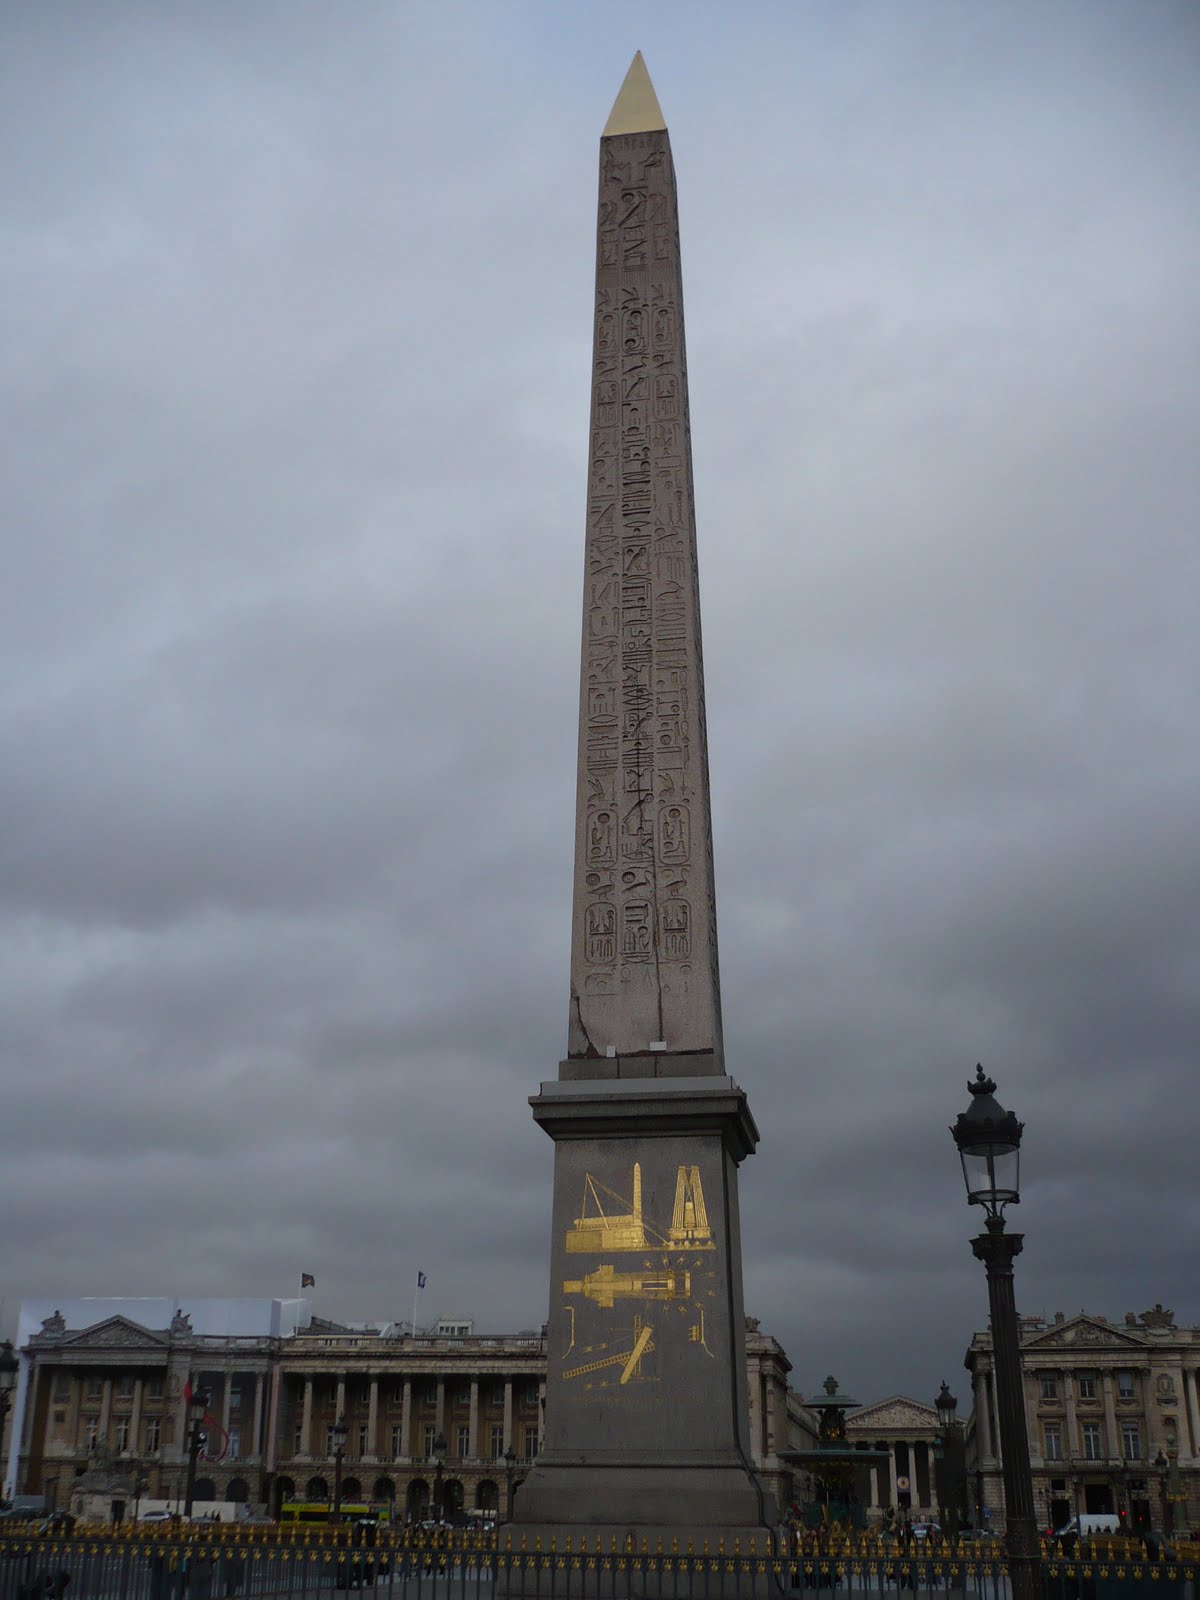 Heliopolis Obelisk